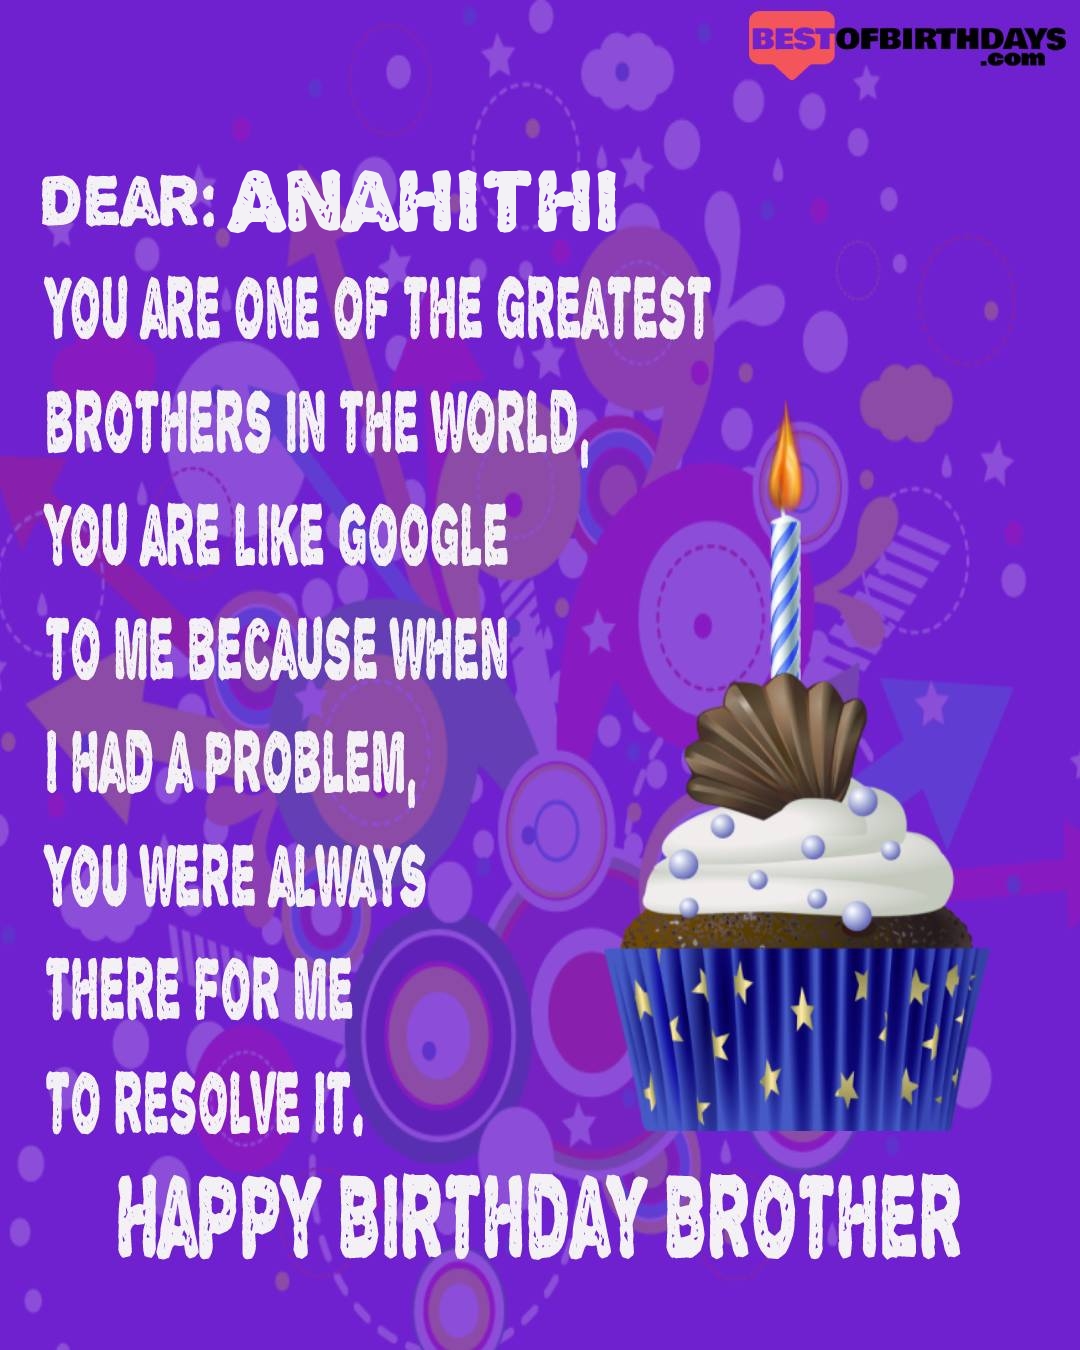 Happy birthday anahithi bhai brother bro